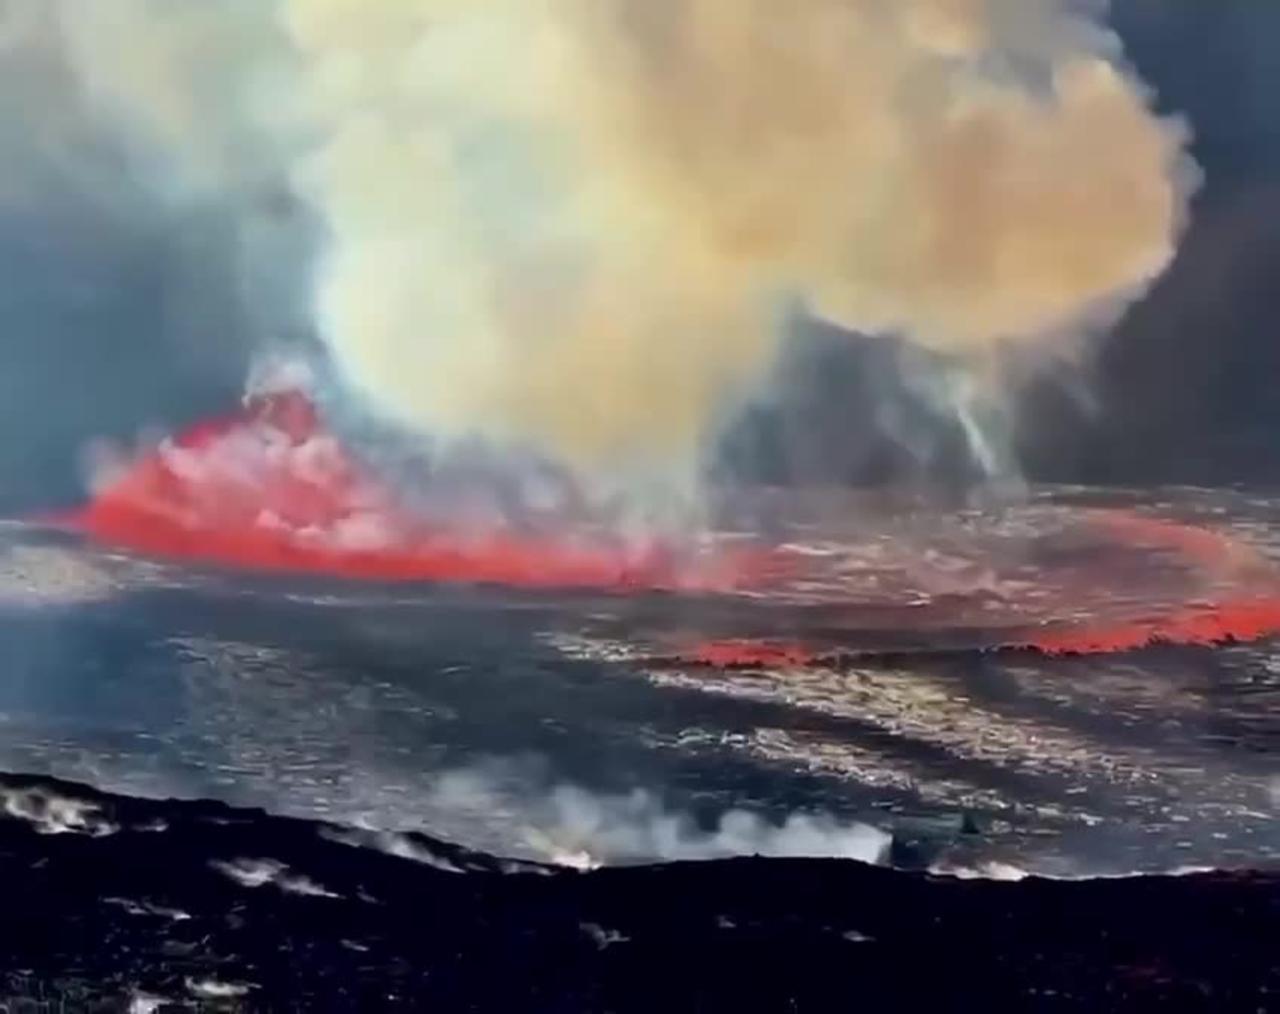 The Hawaiian Islands began an eruption of the Kilauea volcano